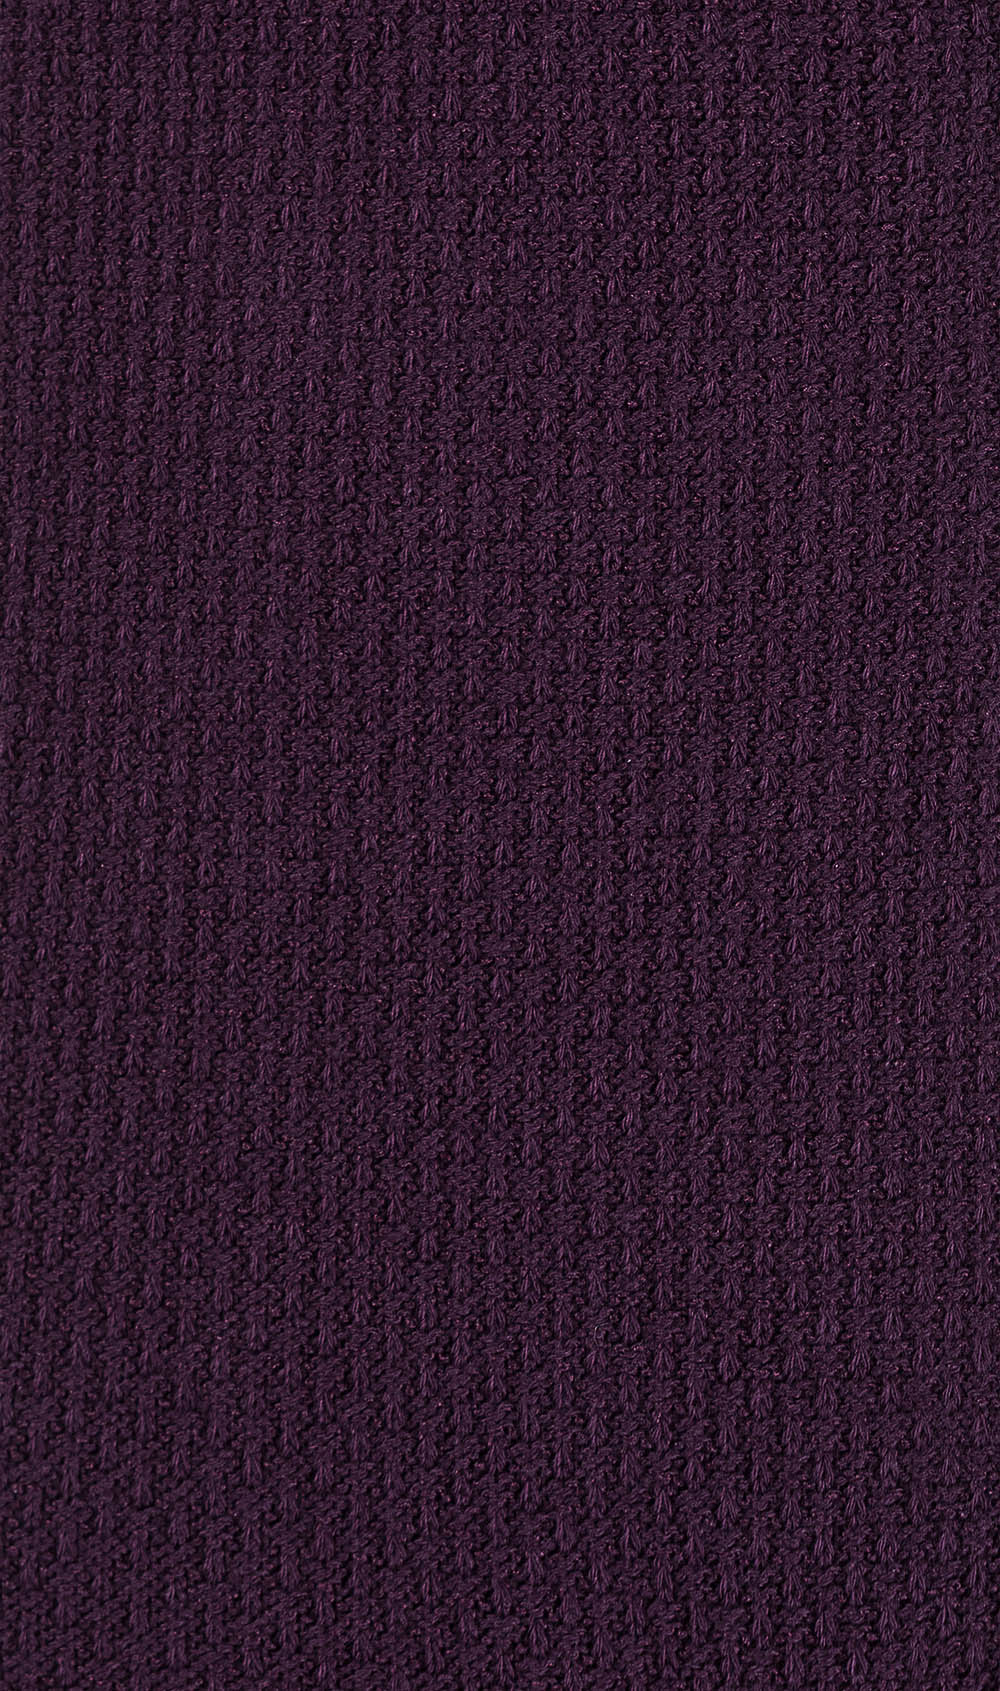 Plum Purple Textured Socks Pattern